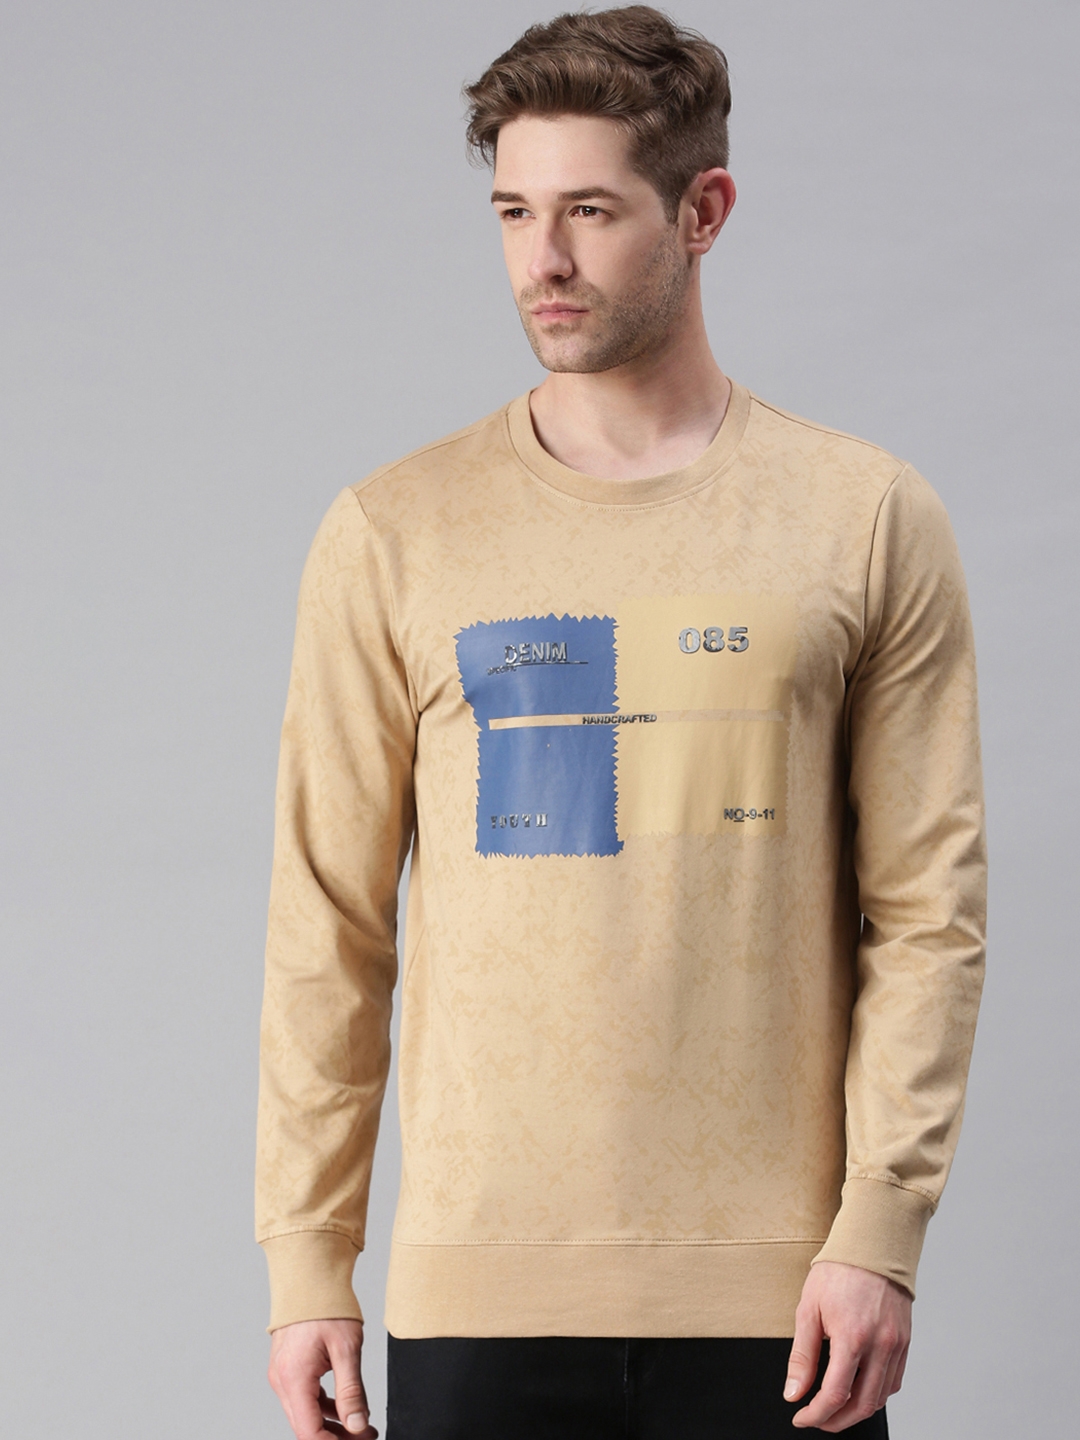 Men's Beige Cotton Blend Printed Sweatshirts